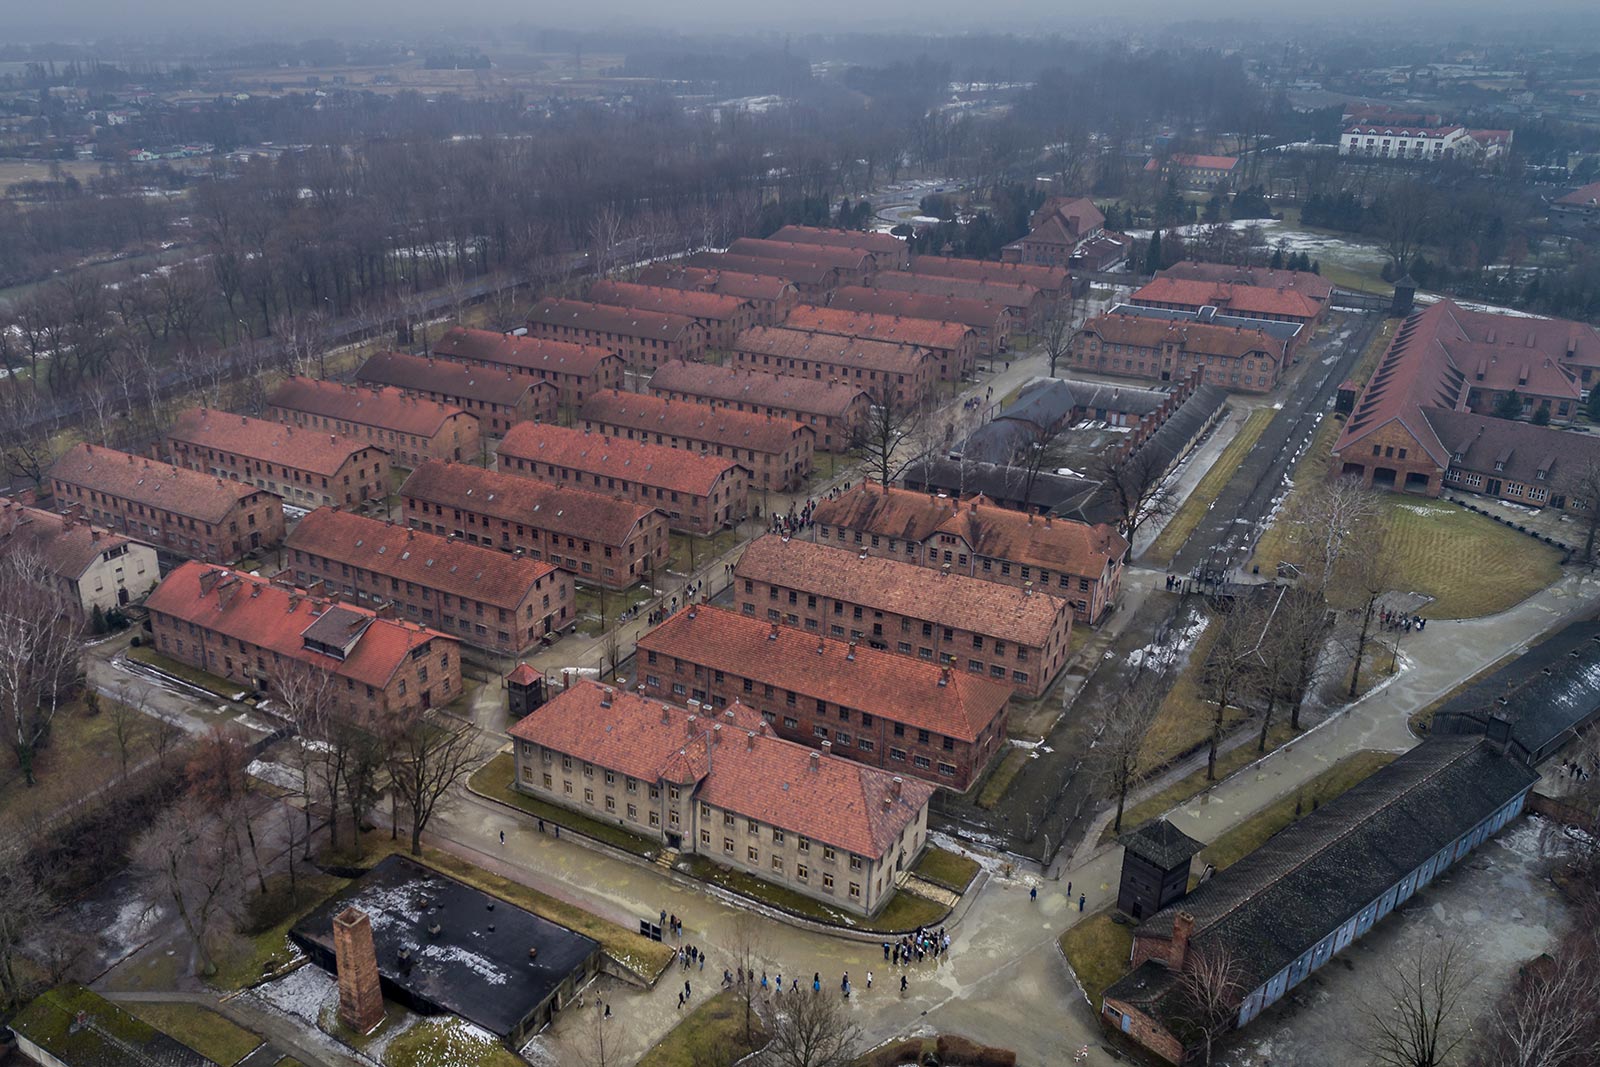 Bird eye view of barracks that used to house Jewish prisoners in Auschwitz, Oświęcim, Poland. Mixed feelings in Auschwitz